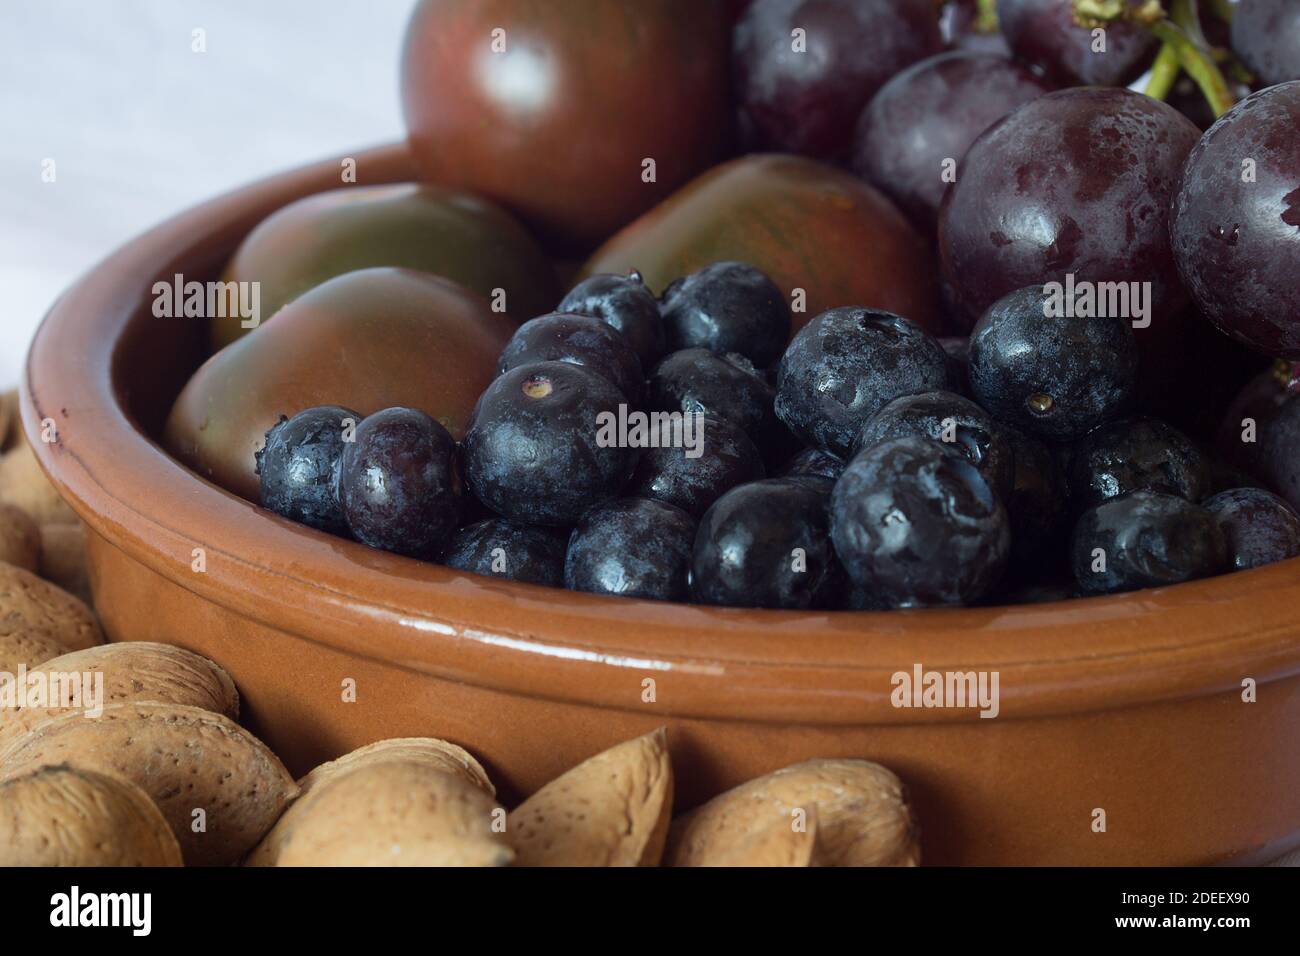 Nahaufnahme von einigen Blaubeeren mit einem Bund schwarzer Trauben, Tomaten und Mandeln in einer Tonschüssel auf einem Küchentisch in einem Haus. Stockfoto